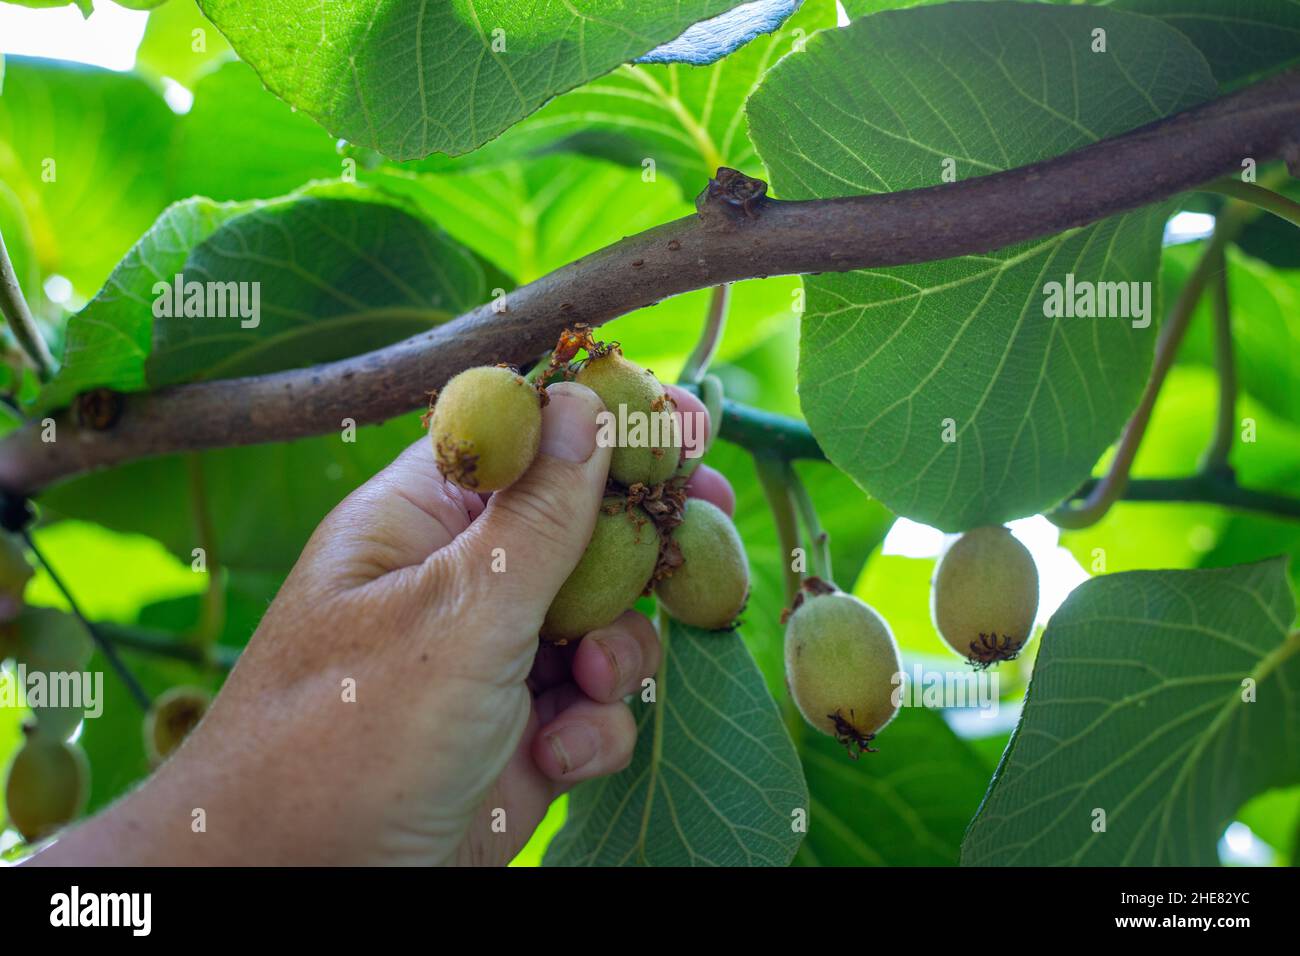 El adelgazamiento de la fruta se hace varias veces durante la temporada de crecimiento para obtener la cantidad óptima de rendimiento exportable en una vid de kiwis, Isla del Norte, Nueva Zelanda Foto de stock